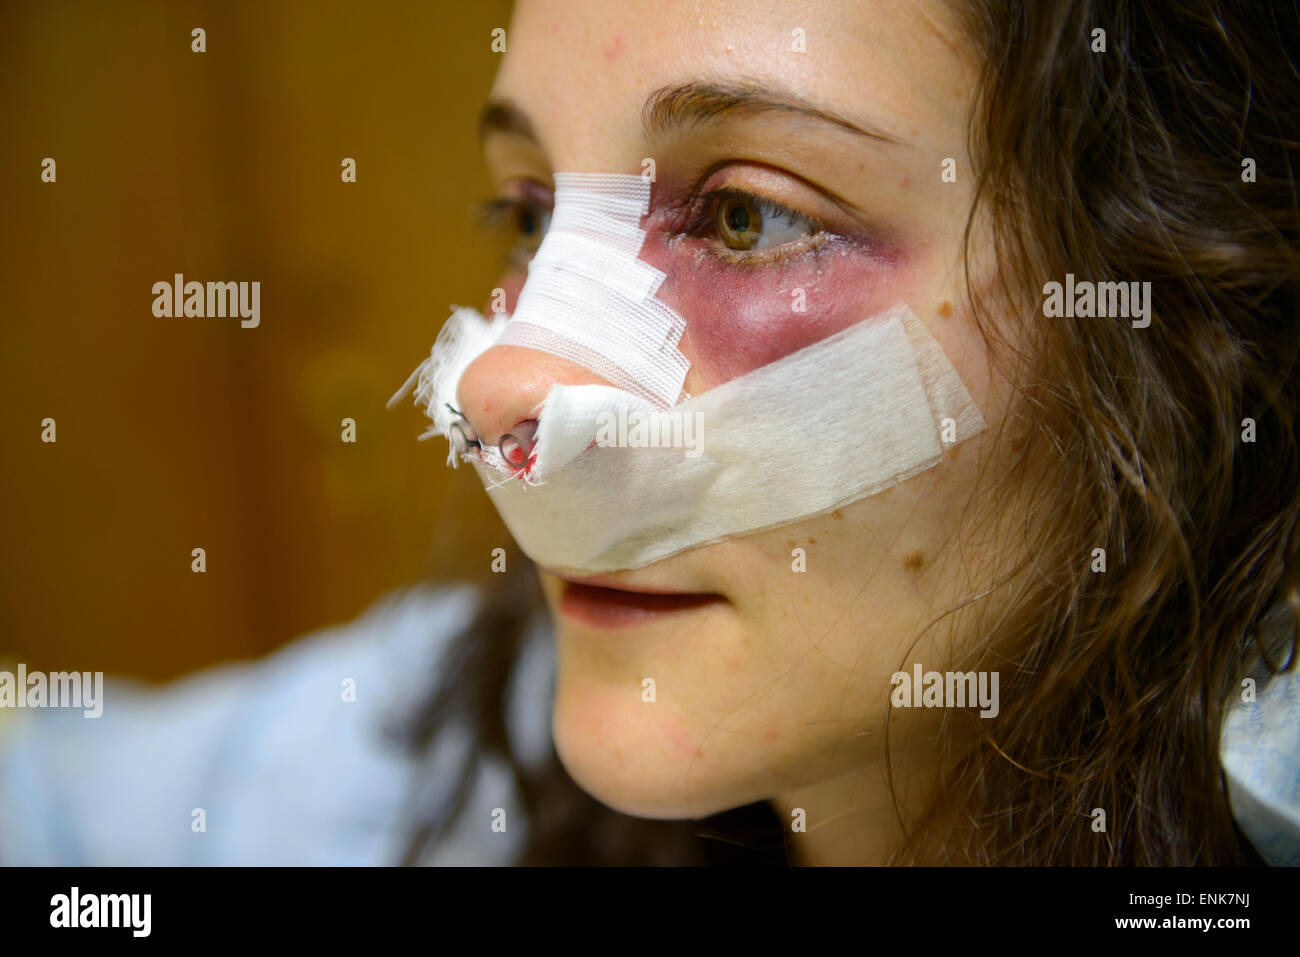 CIRURGIA NO NARIZ ! (OPERATE NOW) - nose surgery 